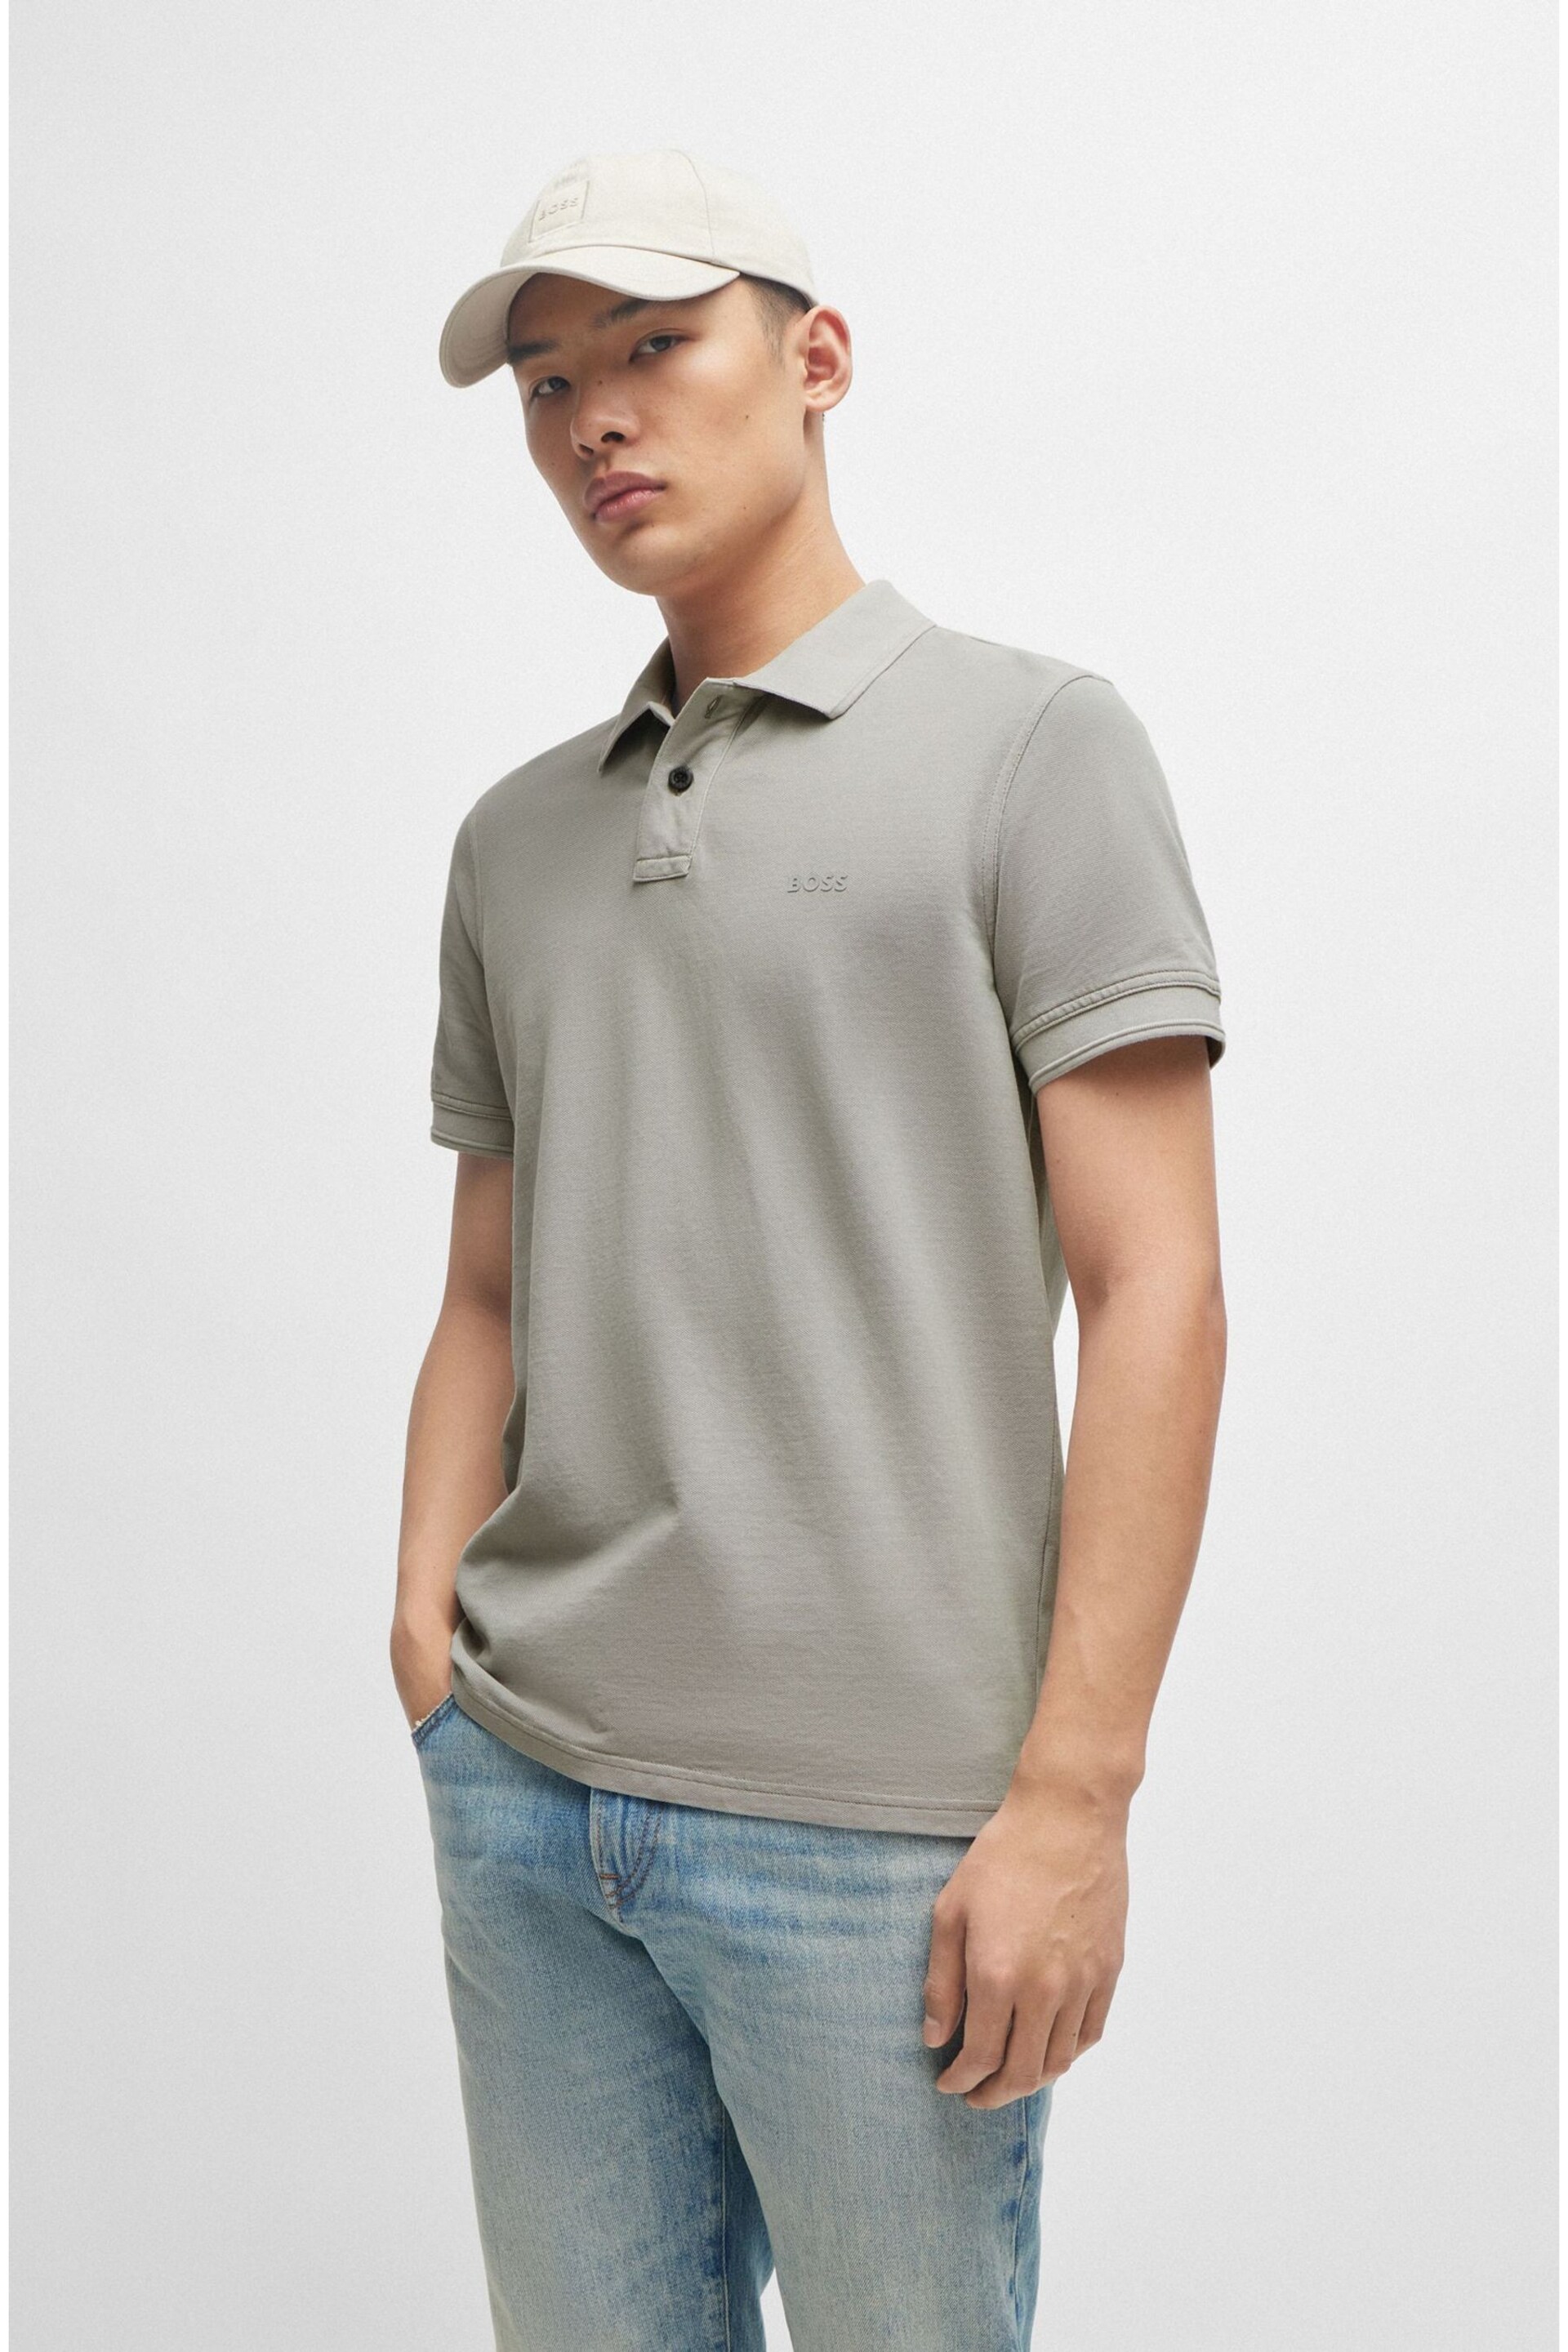 BOSS Grey Cotton Pique Polo Shirt - Image 1 of 5